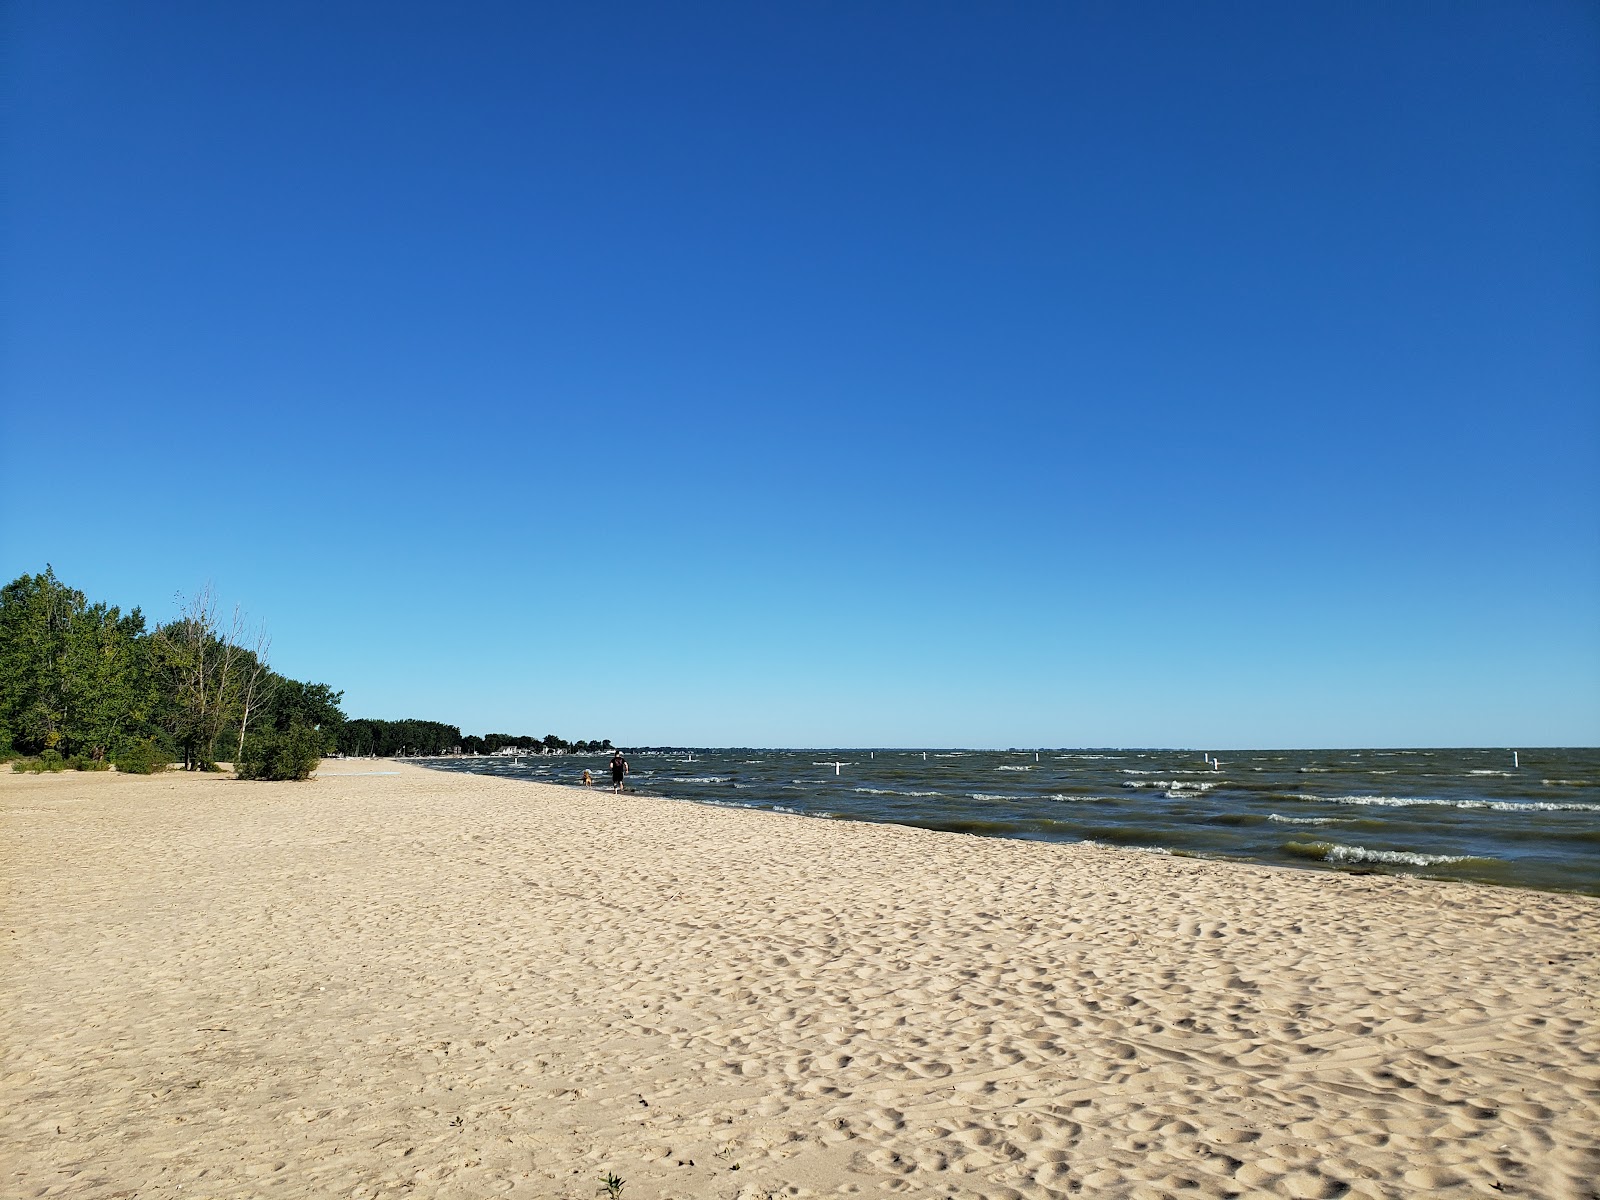 Zdjęcie Bay City State Park Beach z powierzchnią jasny piasek